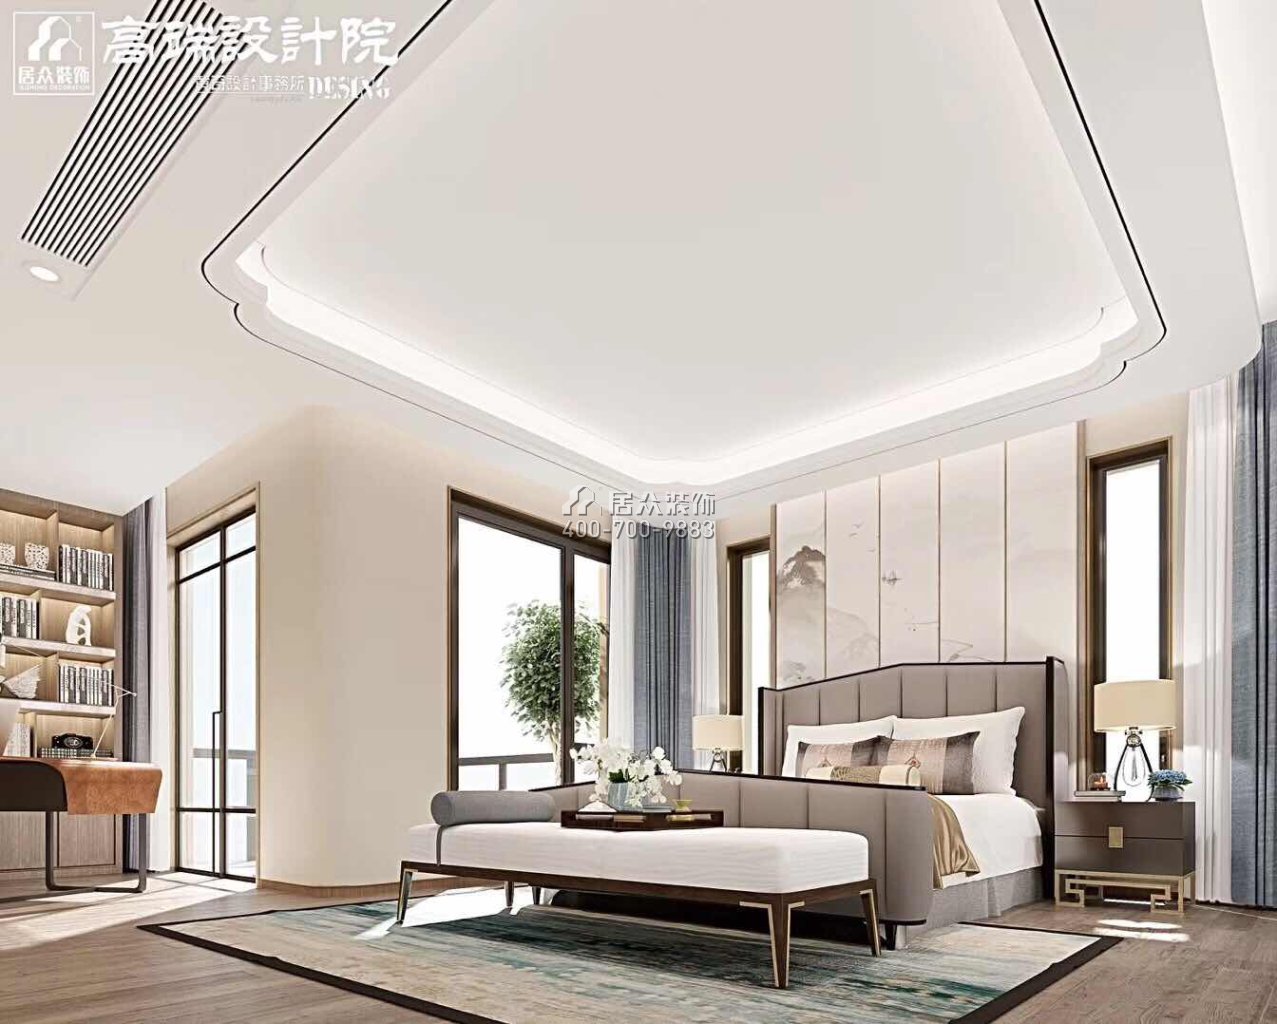 湘江一号500平方米中式风格别墅户型装修效果图